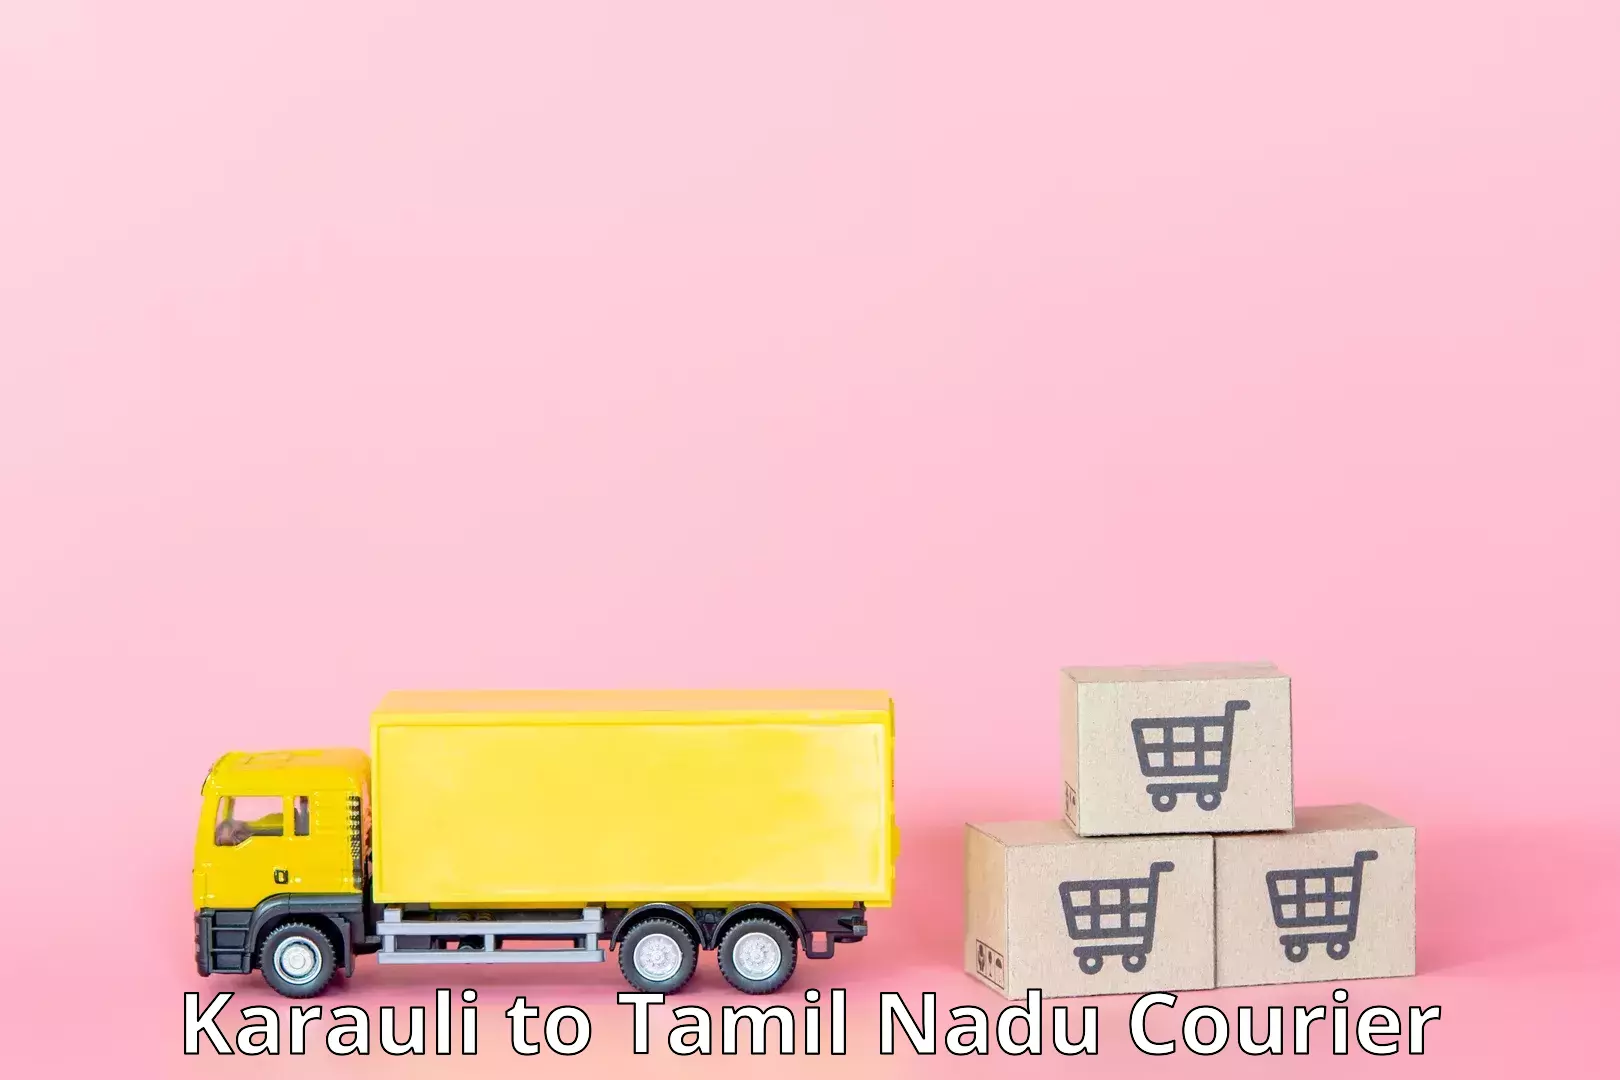 Global logistics network Karauli to Tamil Nadu